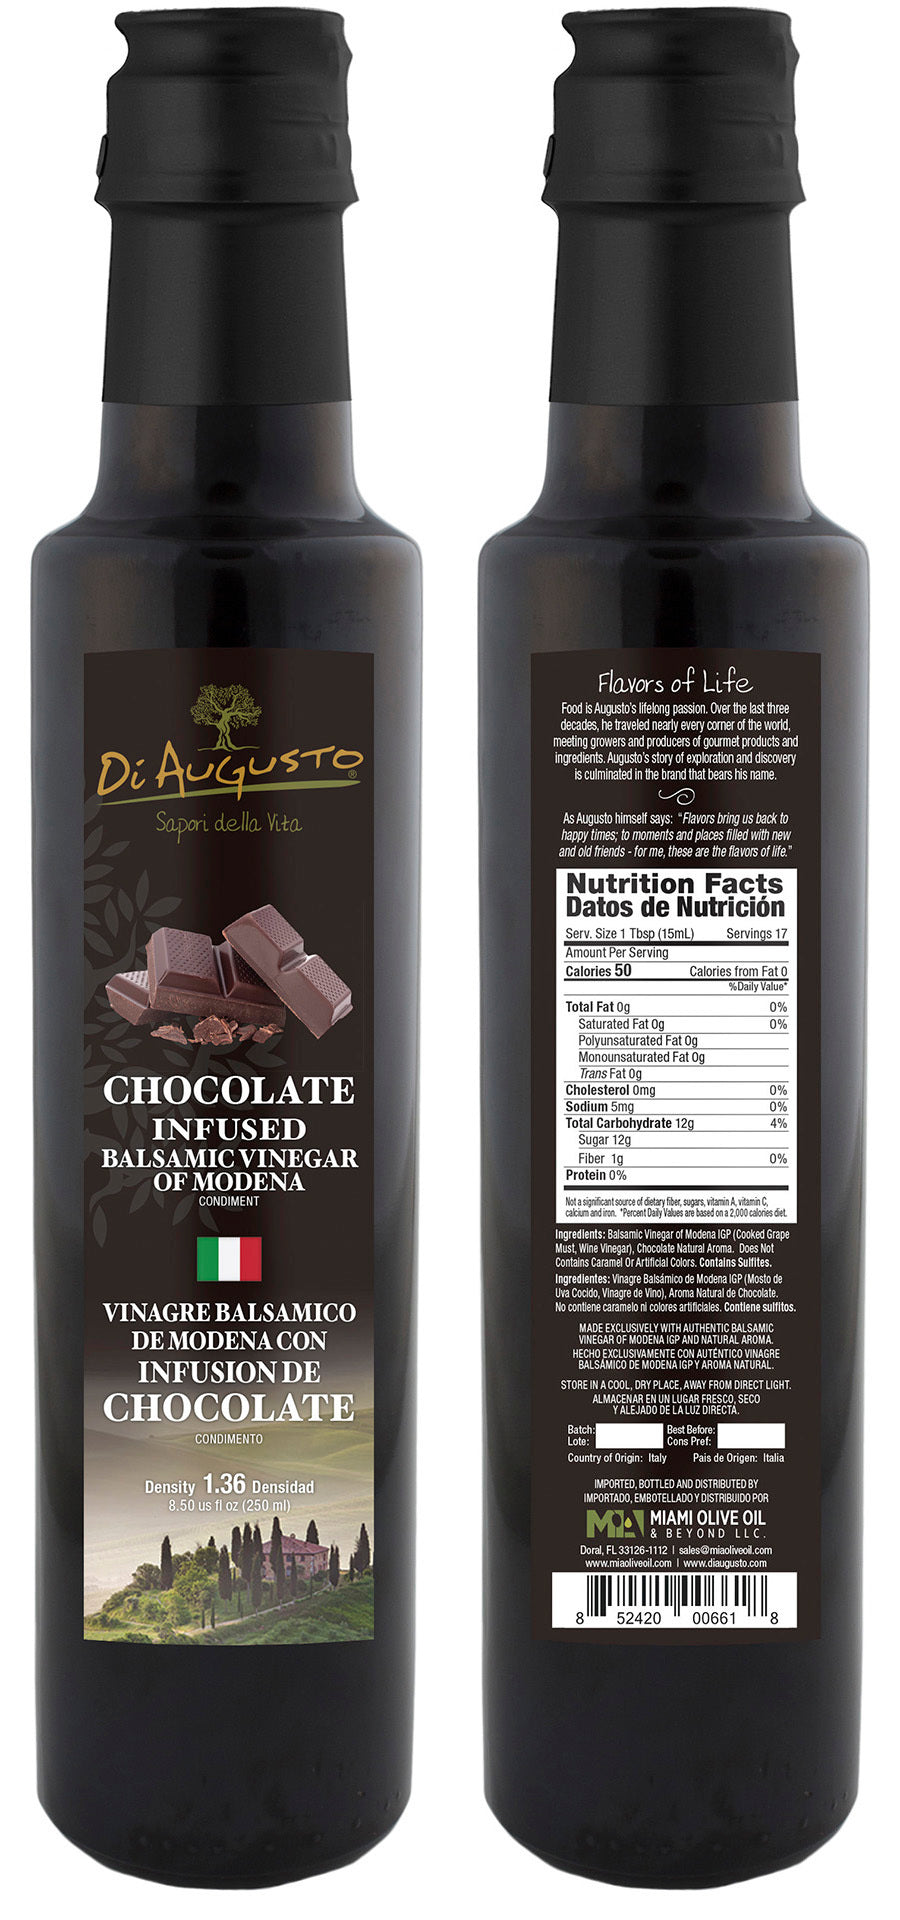 Chocolate Infused Balsamic Vinegar of Modena PGI